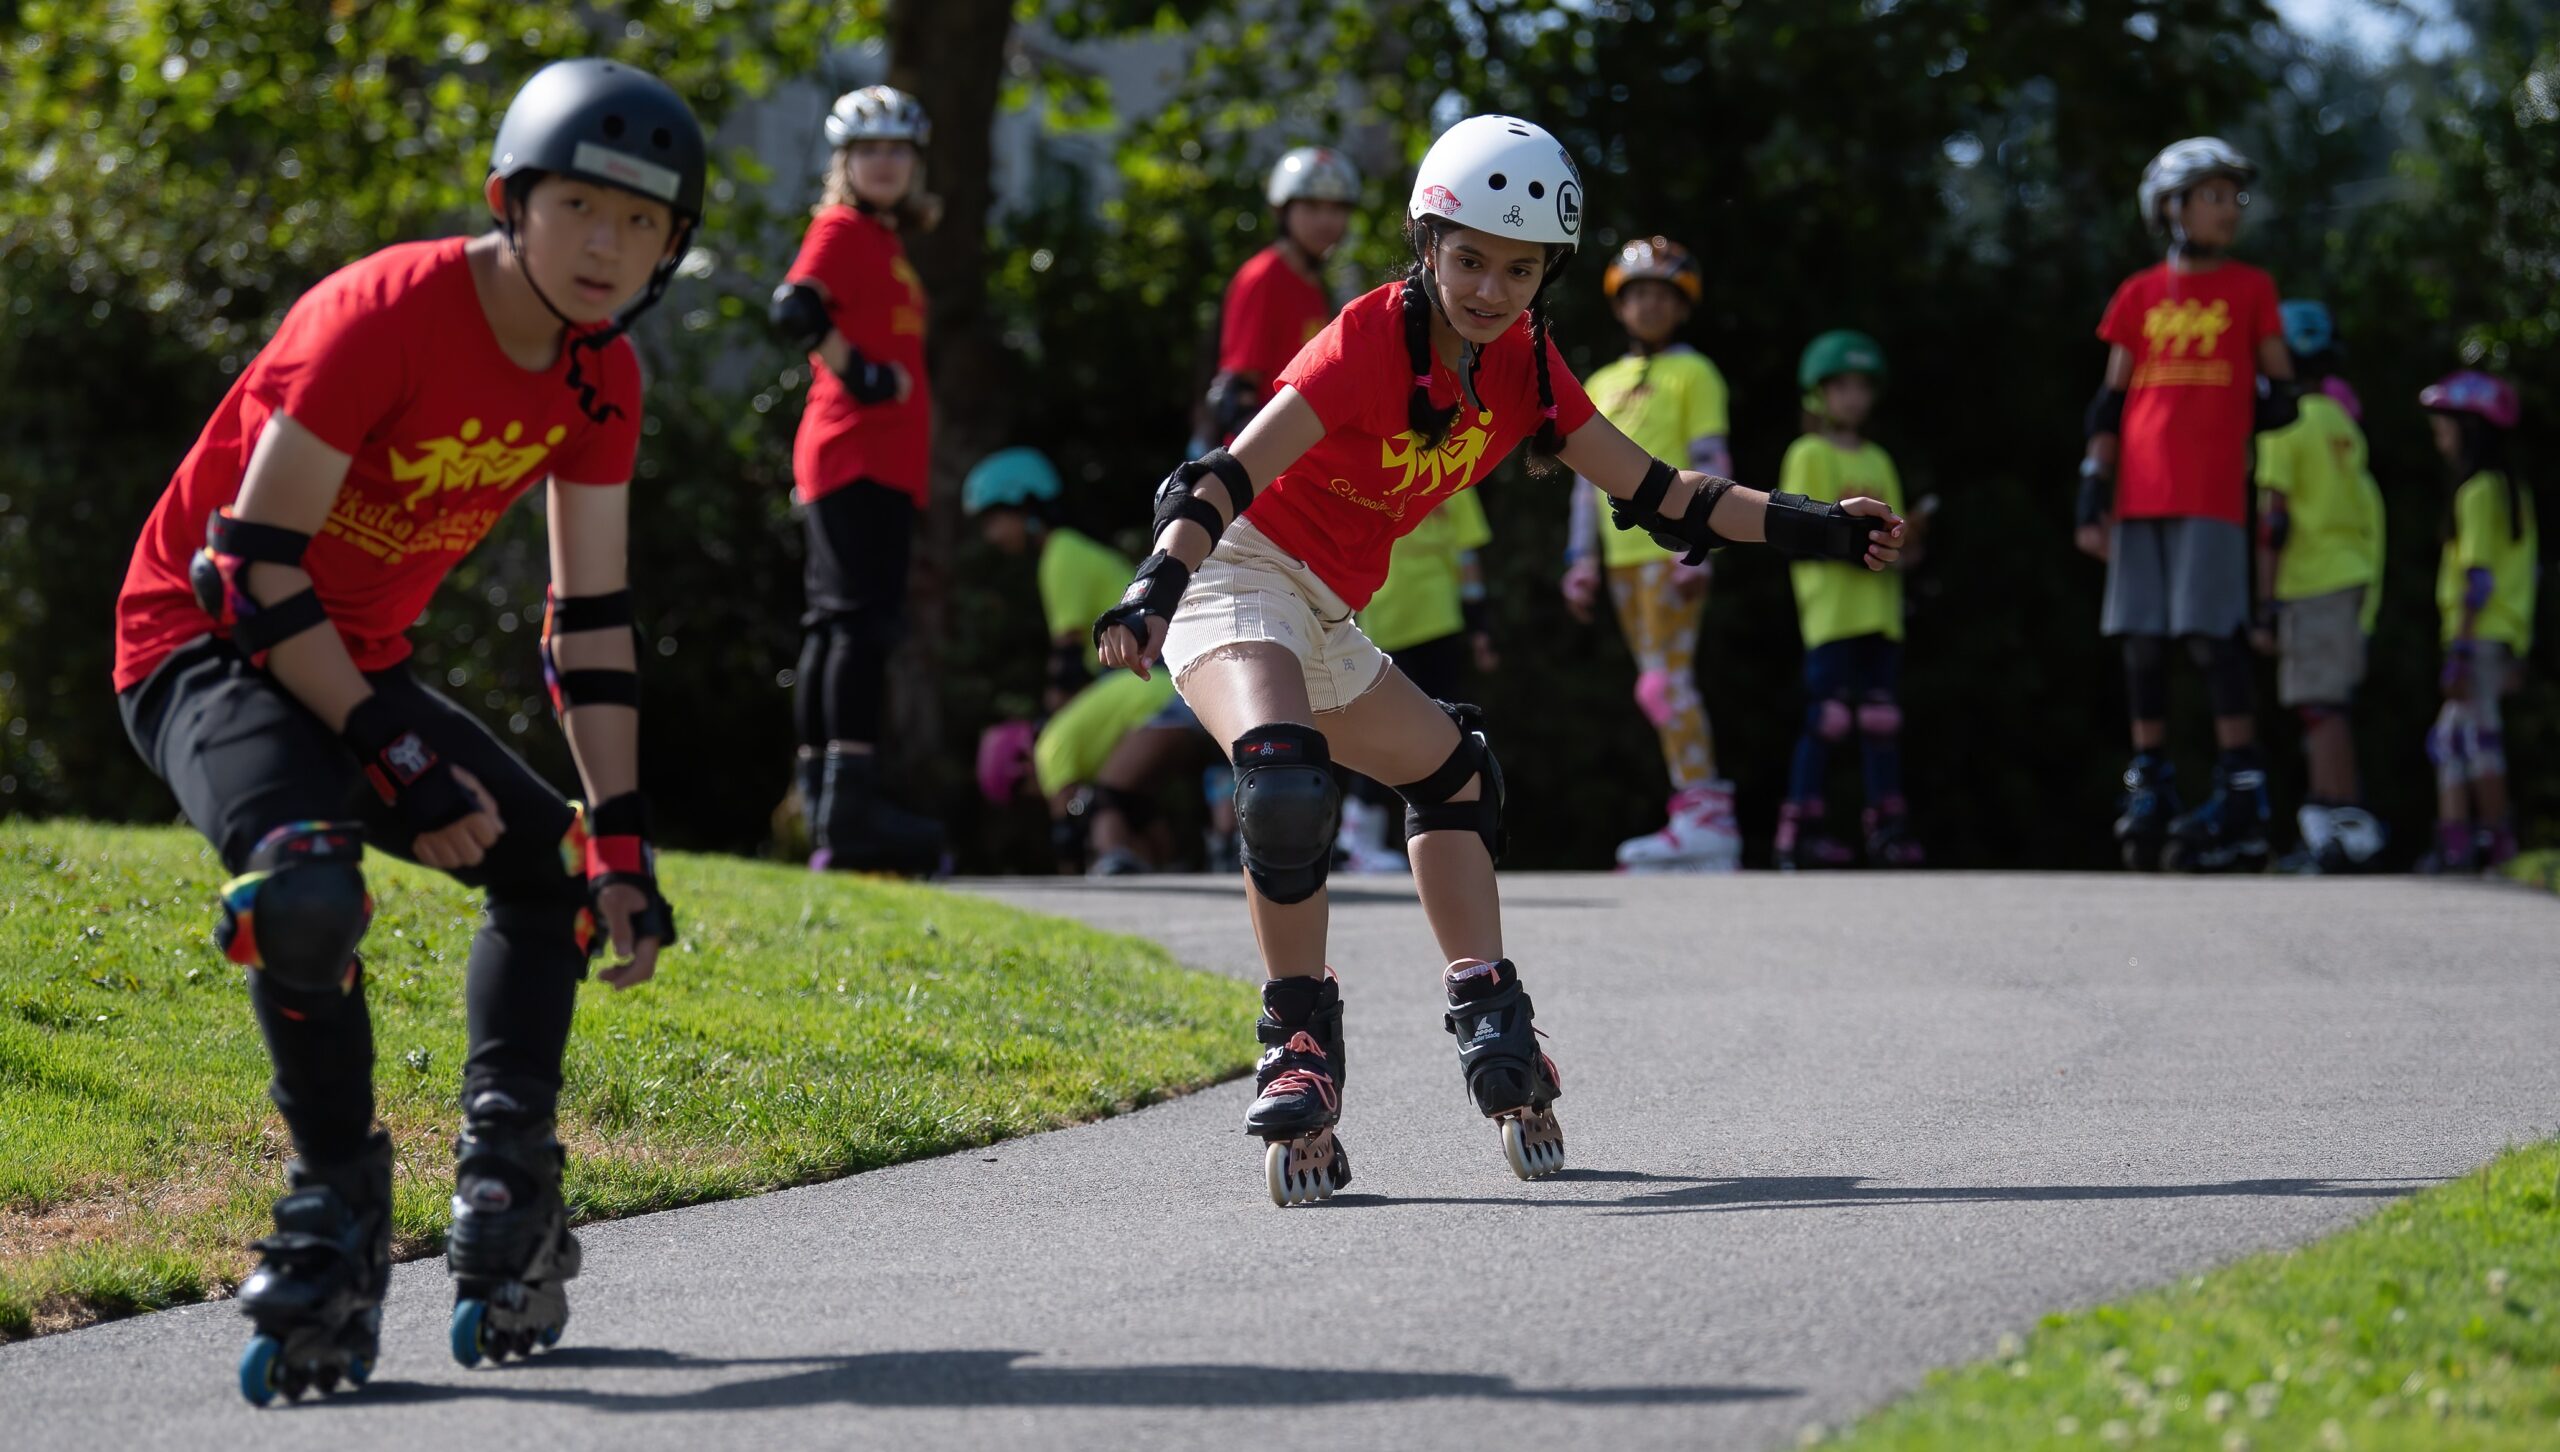 Skate Journeys Summer inline skating camp for Kids